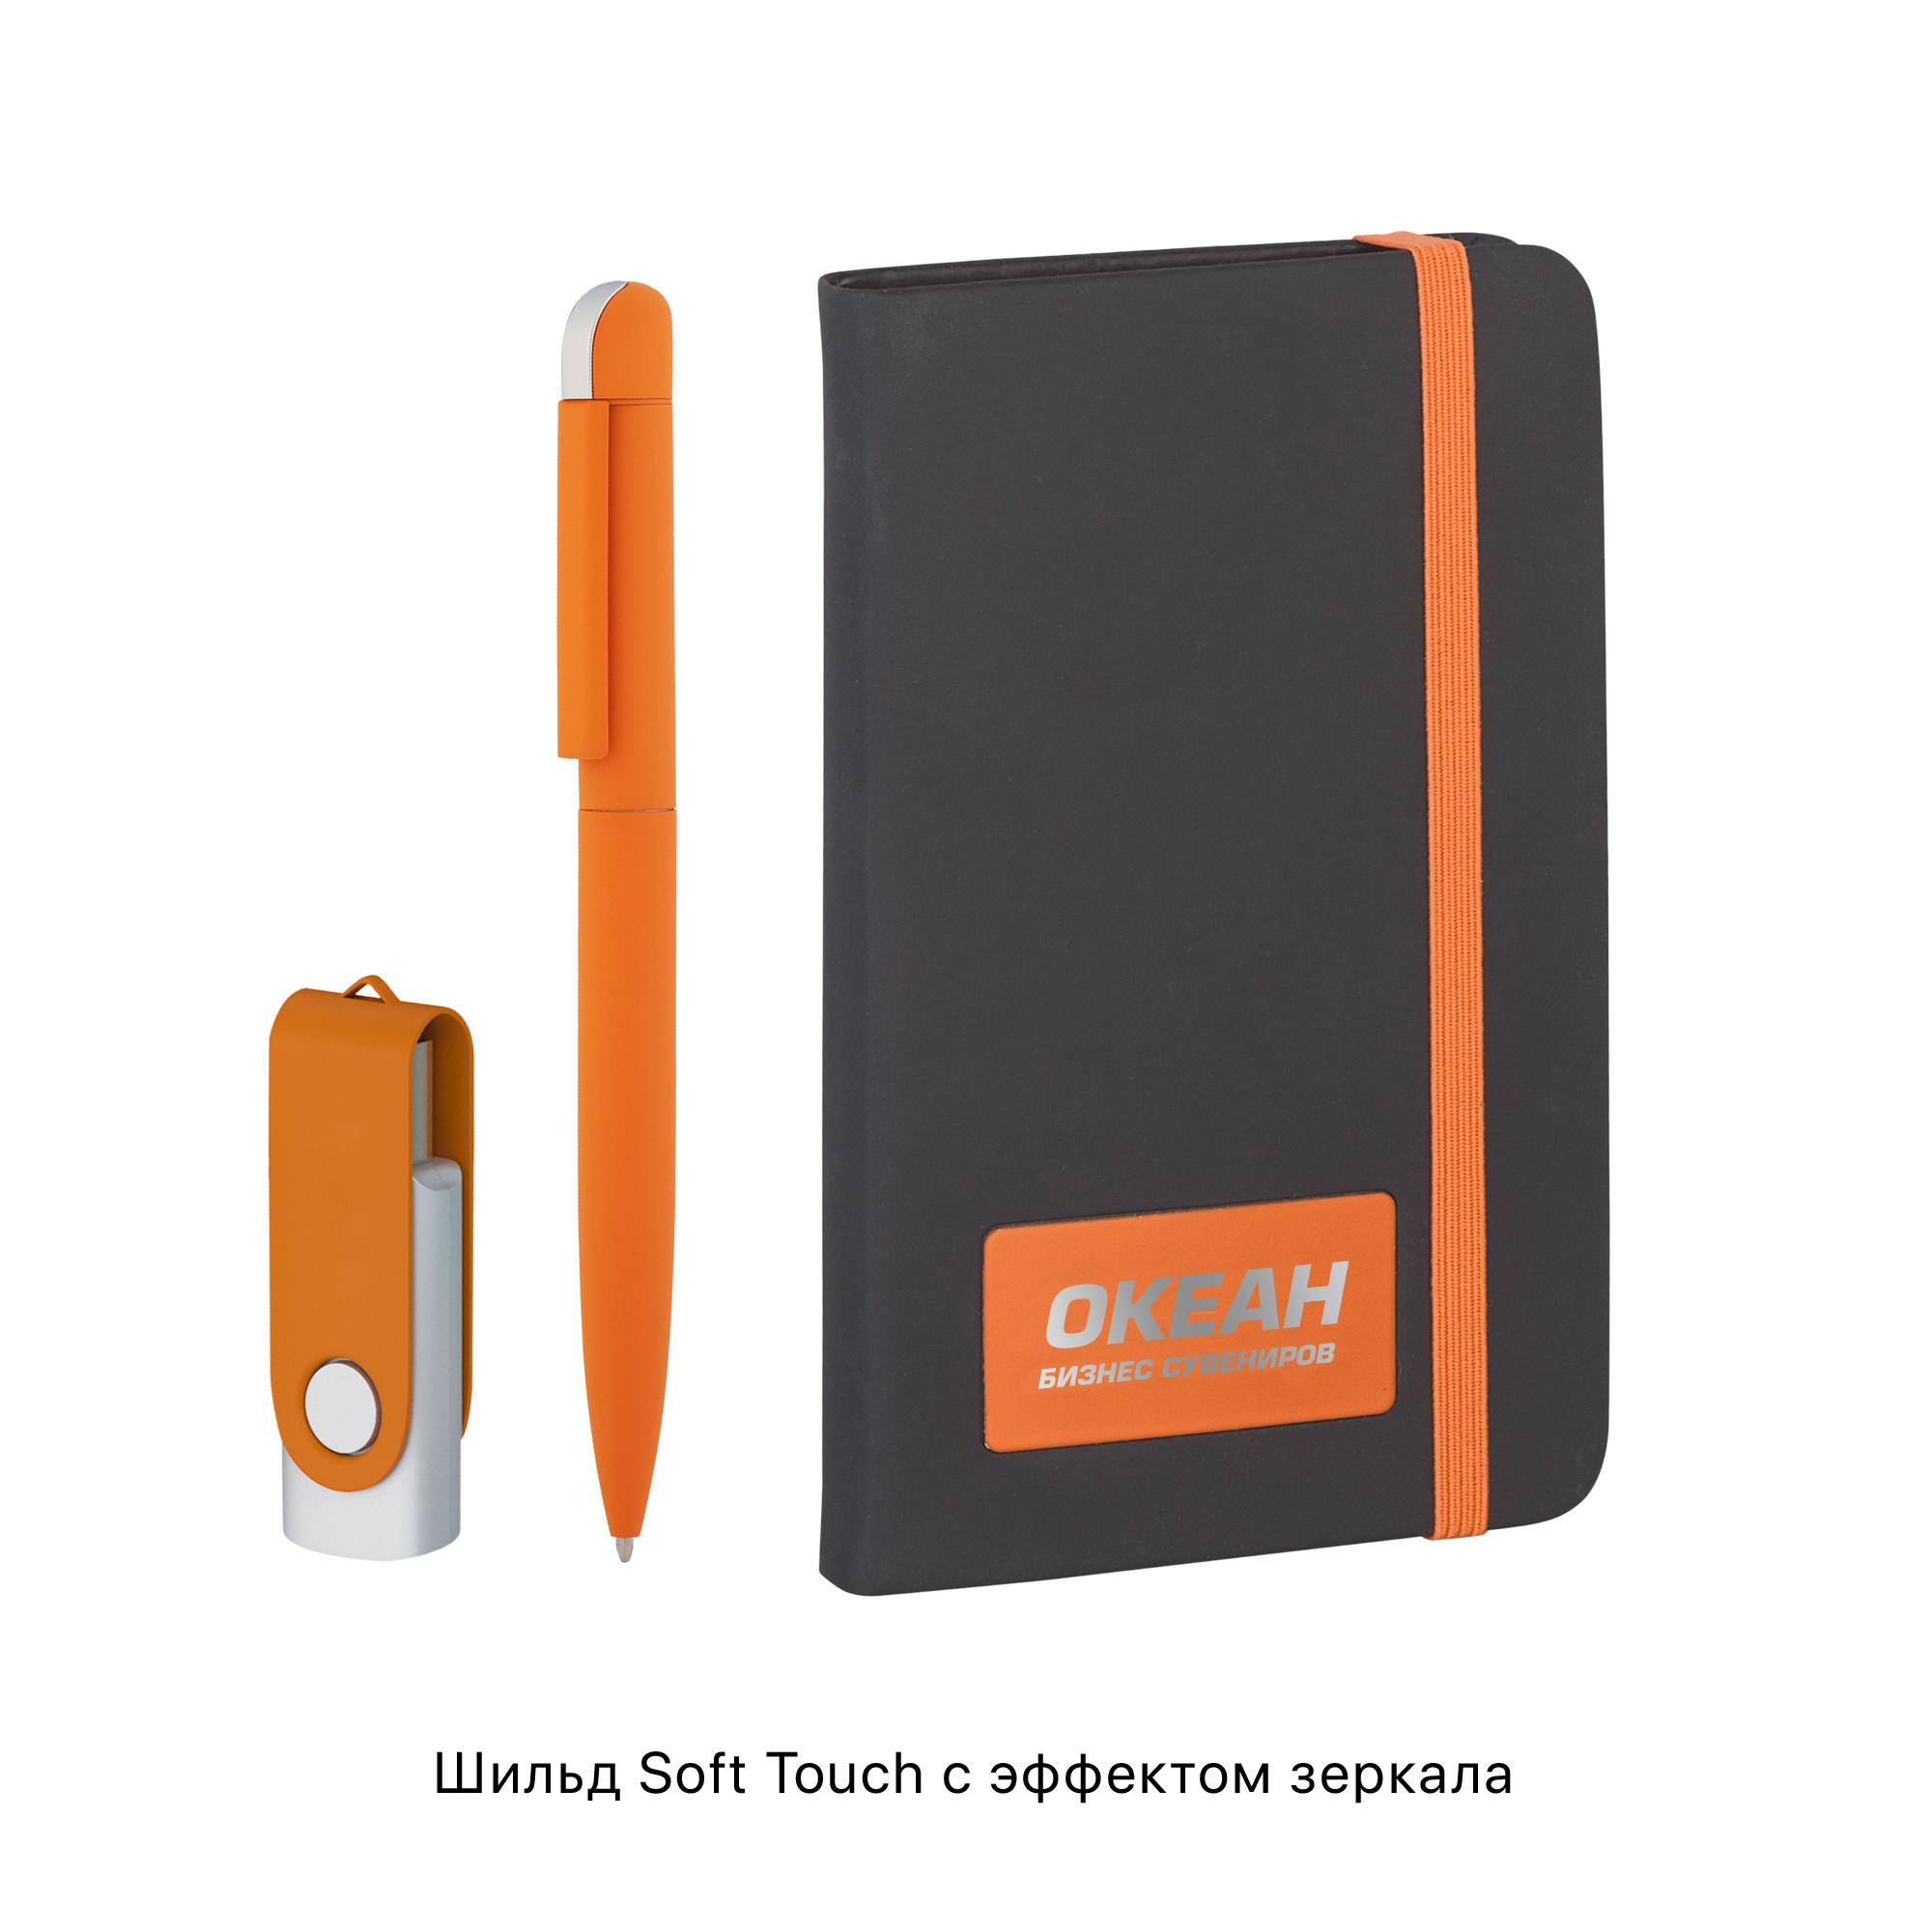 Подарочный набор "Пьемонт", покрытие soft touch, цвет черный с оранжевым, фото 1